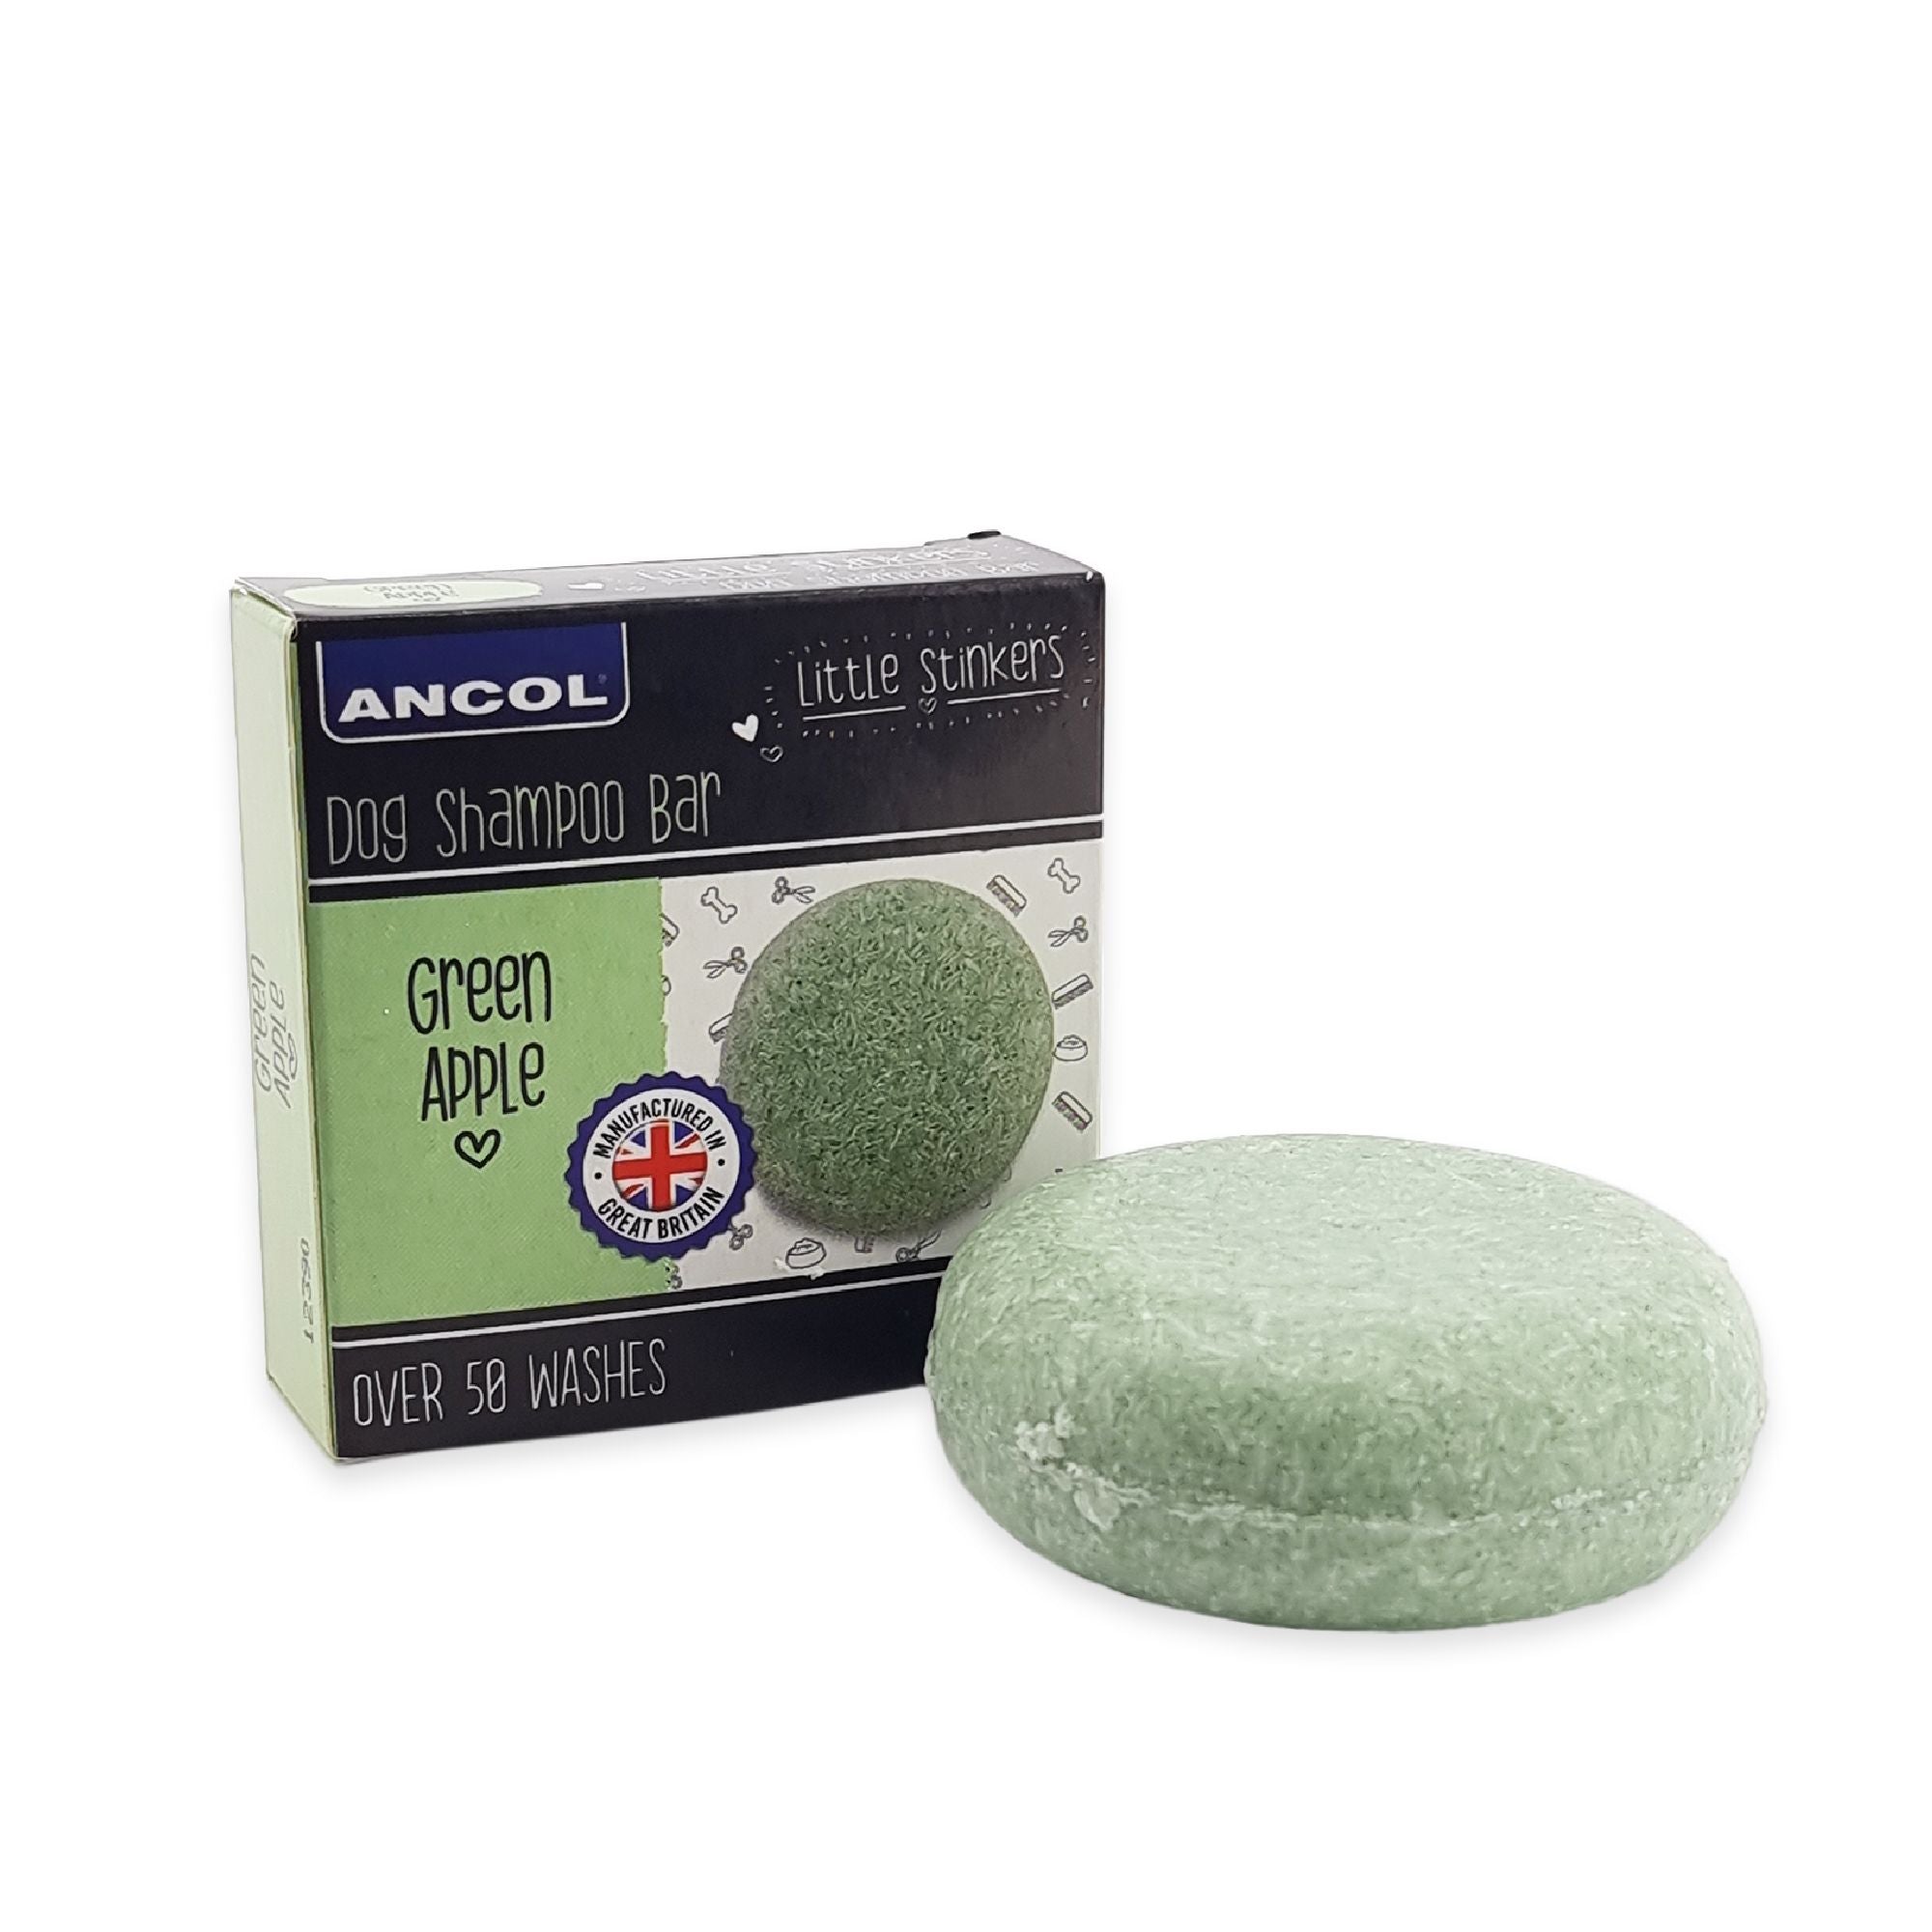 Ancol Little Stinker Dog Shampoo Bar Green Apple 6 x 50g, Ancol,